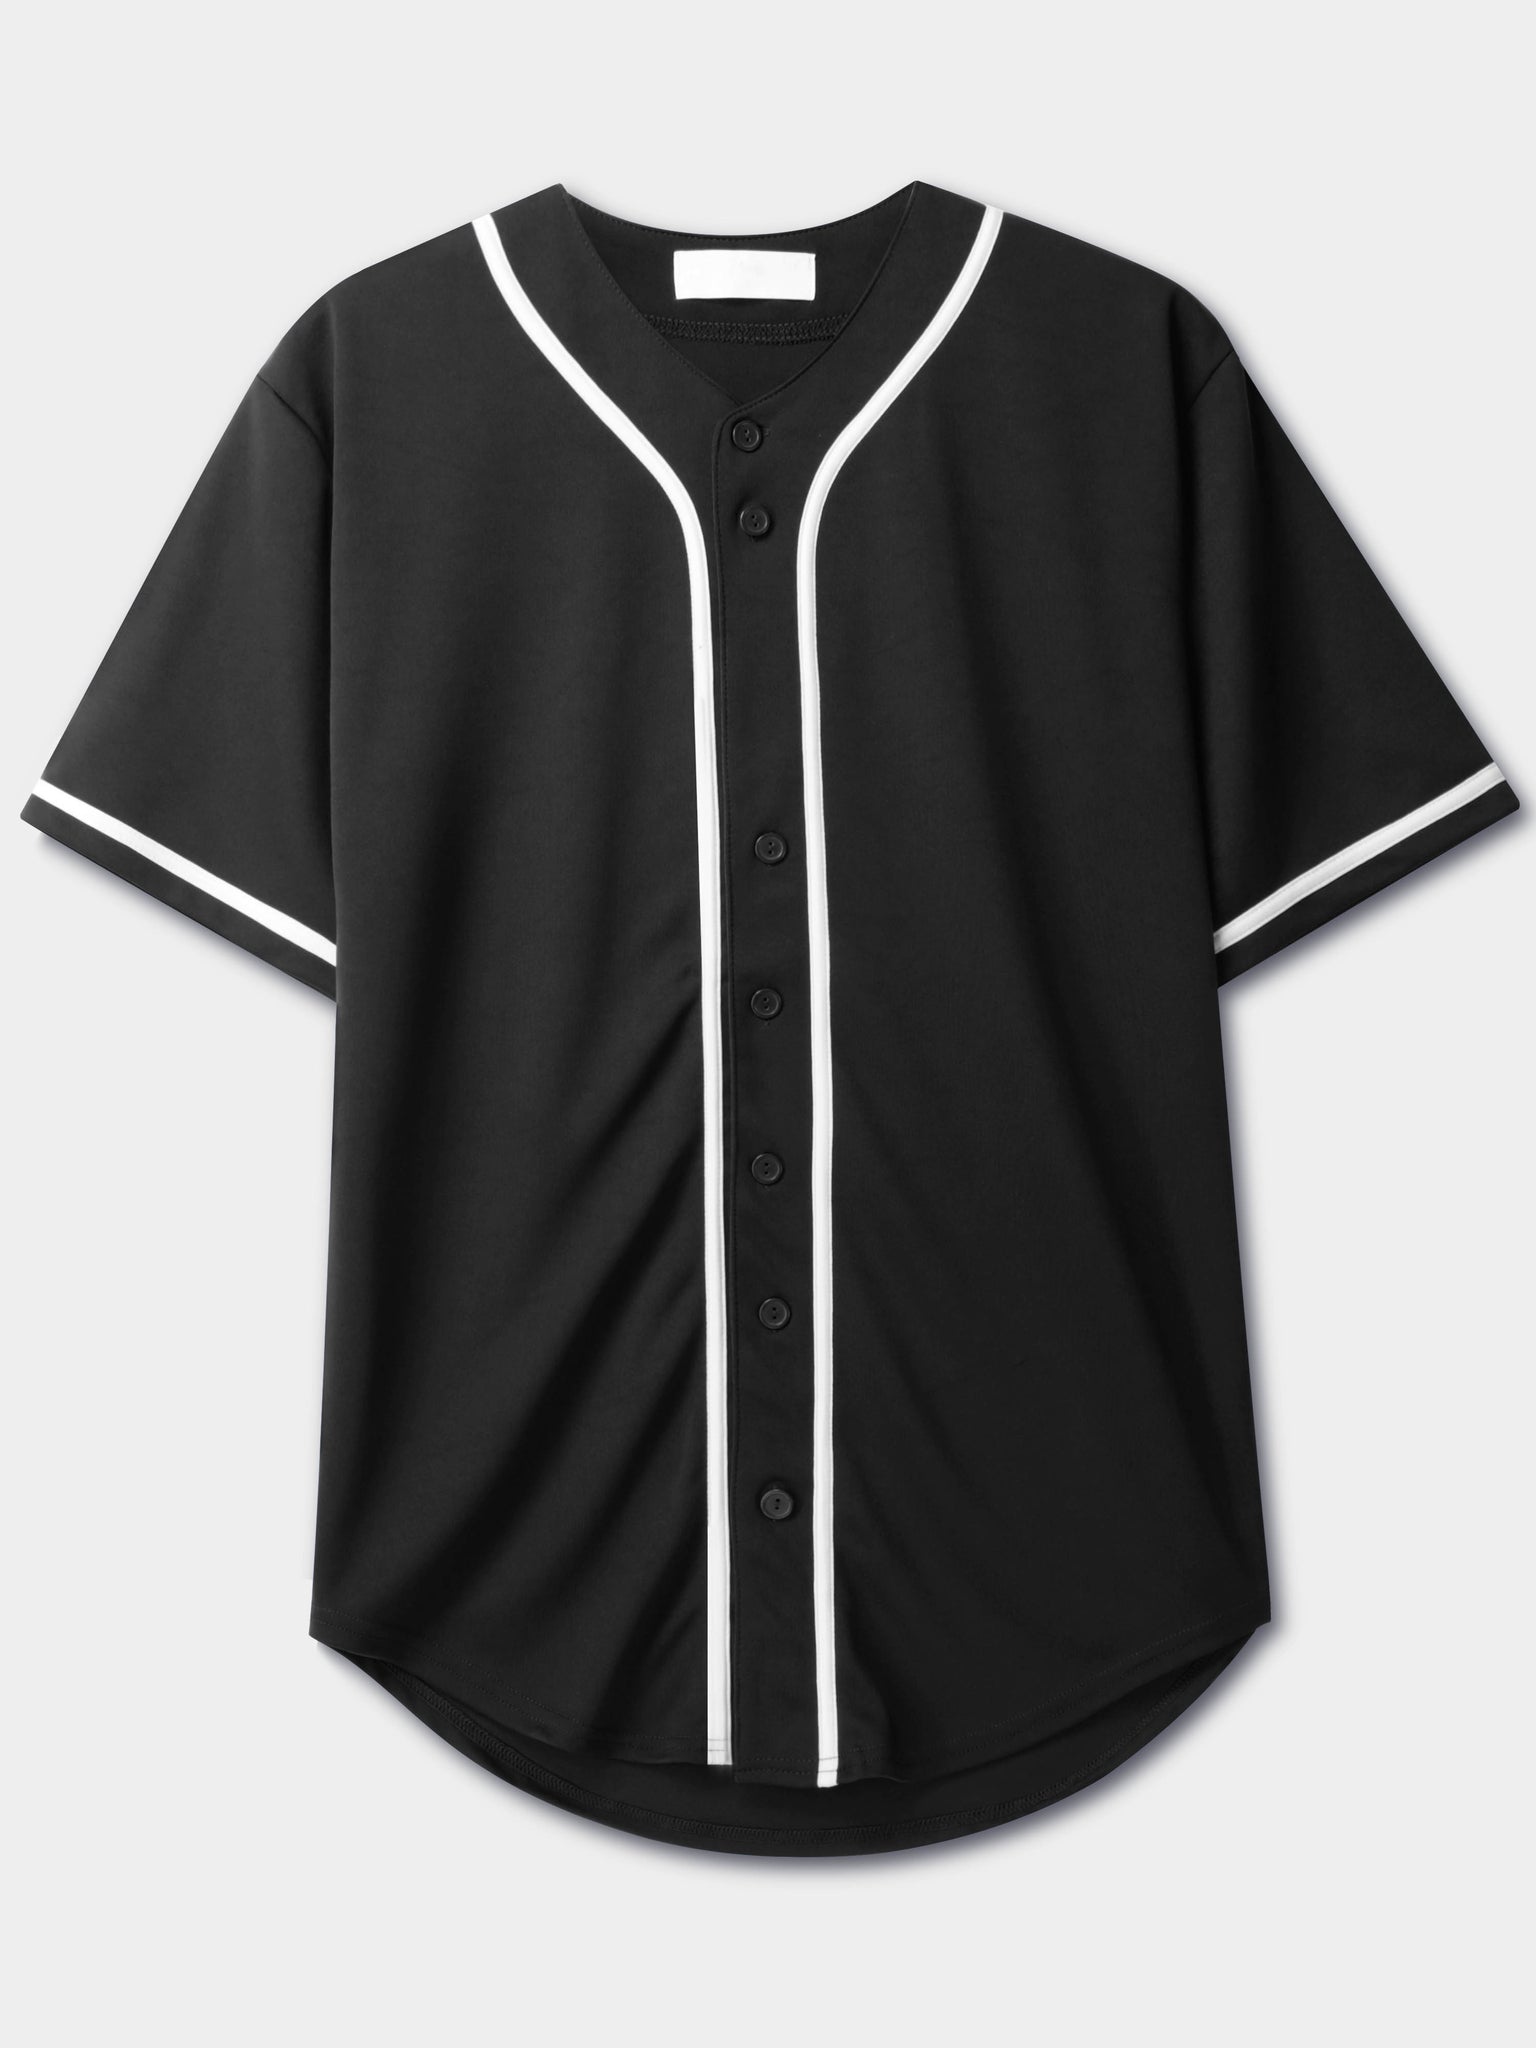 Plain Buttons Uniform Jersey Blank T-Shirt Custom Baseball Customized